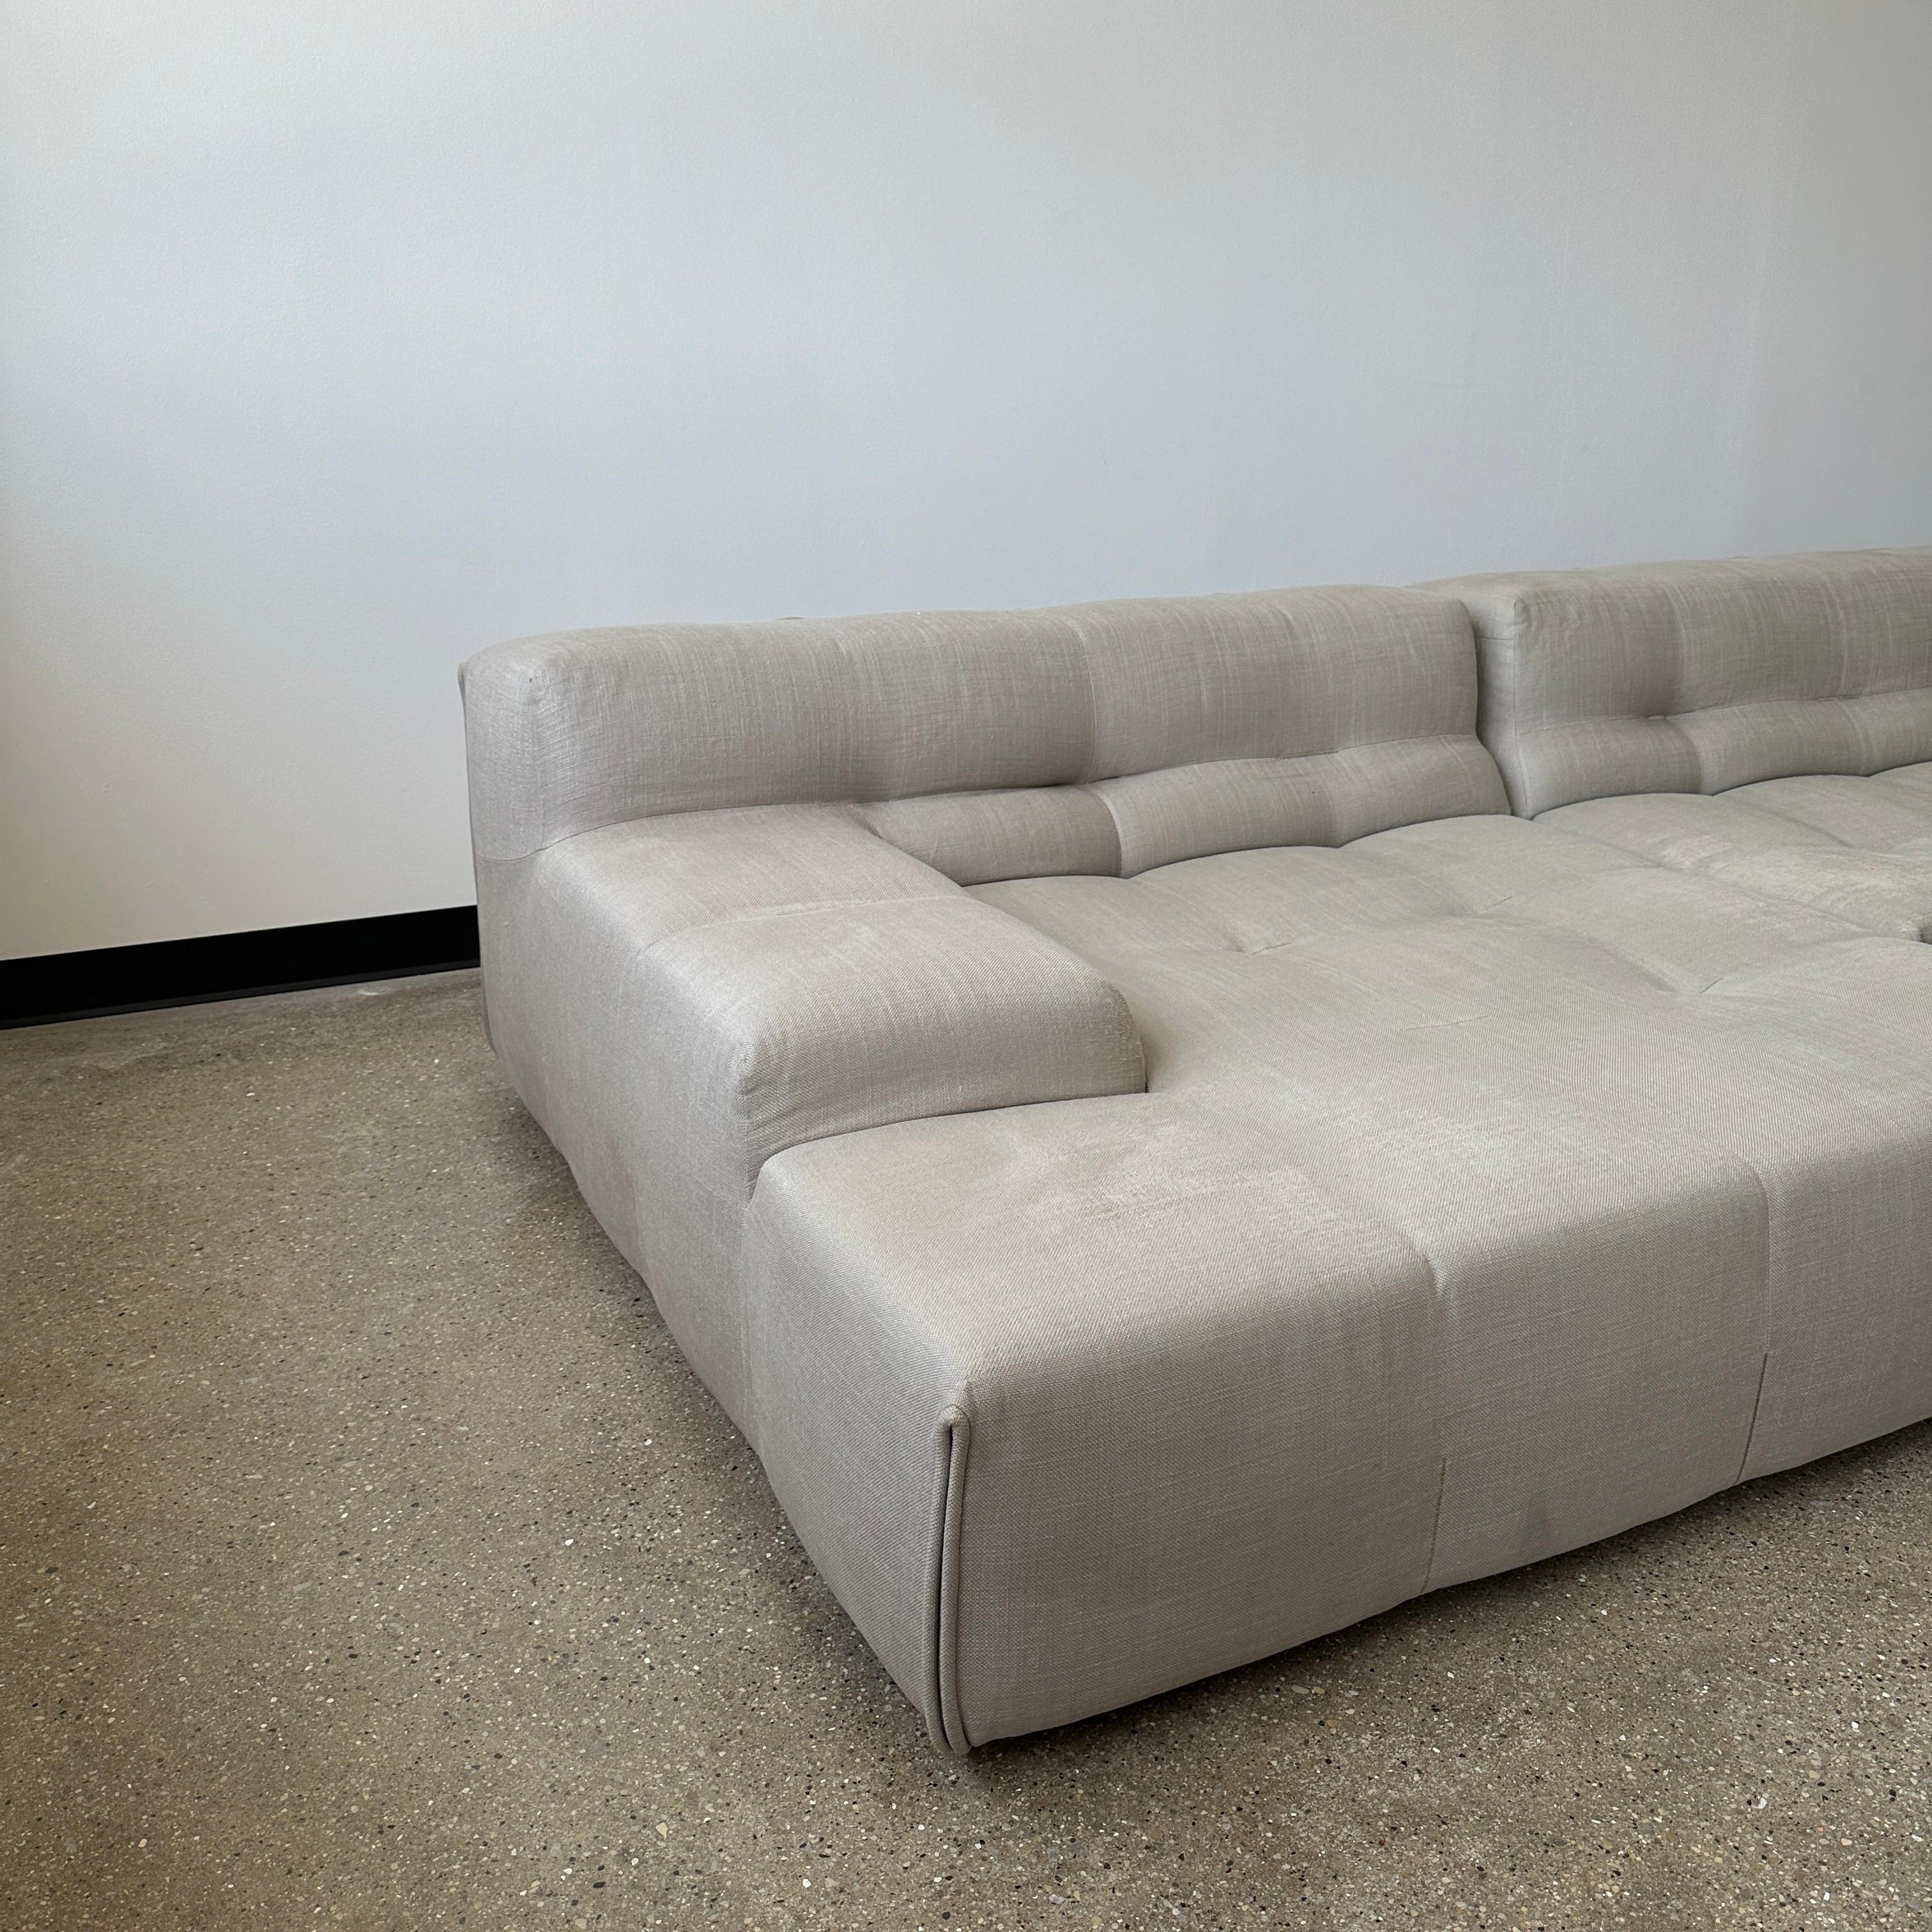 Fabric B&B Italia “Tufty Time” Sofa For Sale